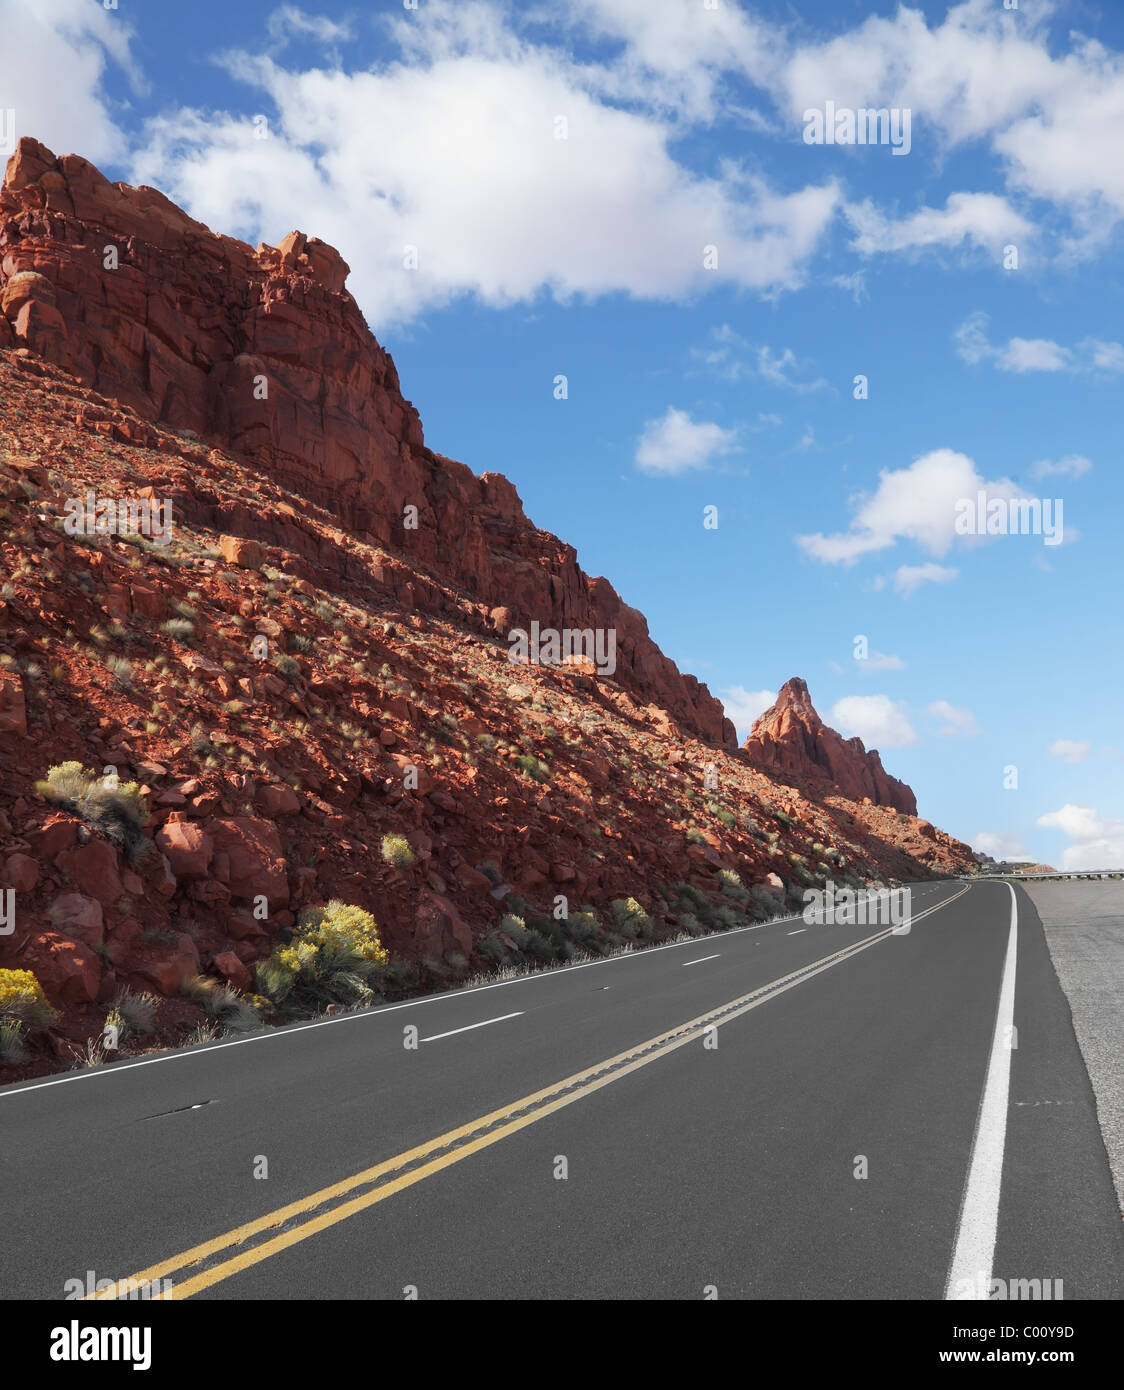 Il magnifico contrassegnato American road passa tra rocce di arenaria rossa Foto Stock